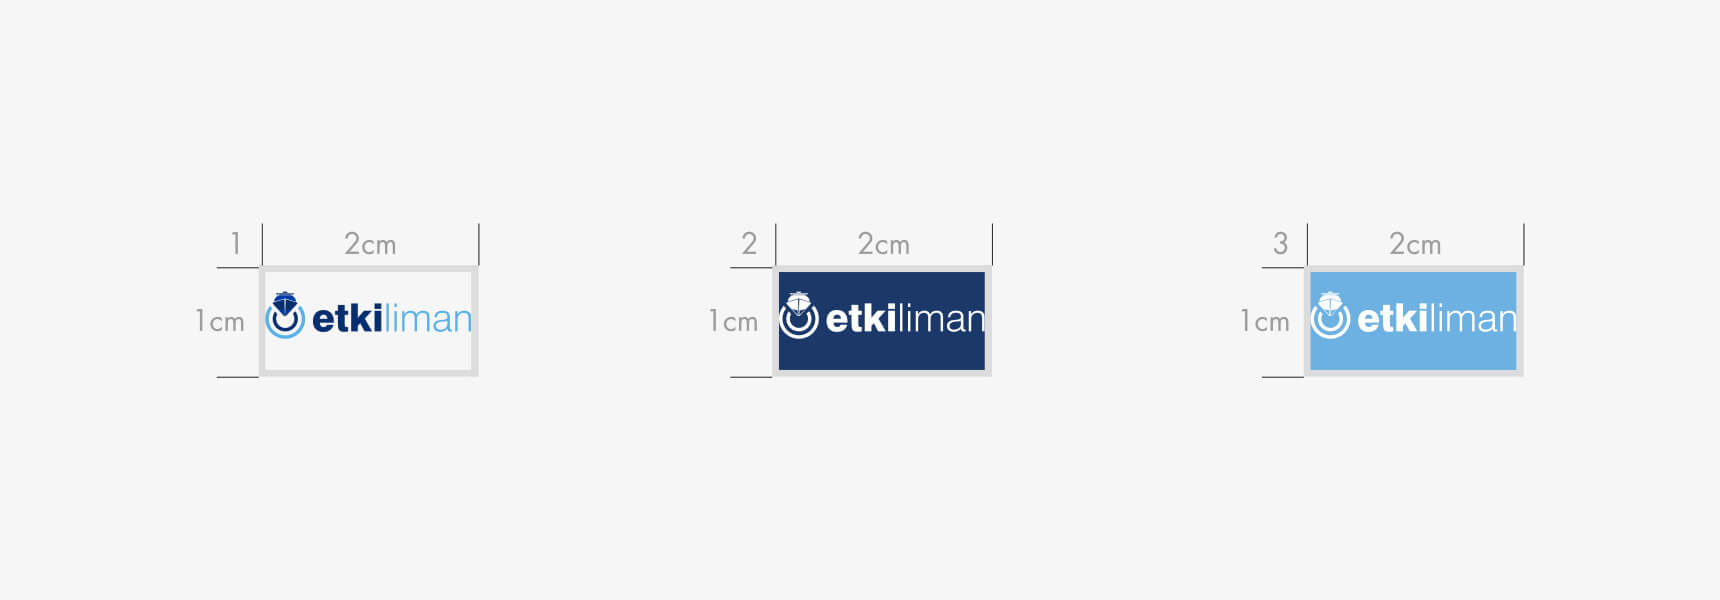 Etki Liman-metin 1-5- ilham-6- logo-metin 2-7- logo-size-8- logo-mockup-9- minimum